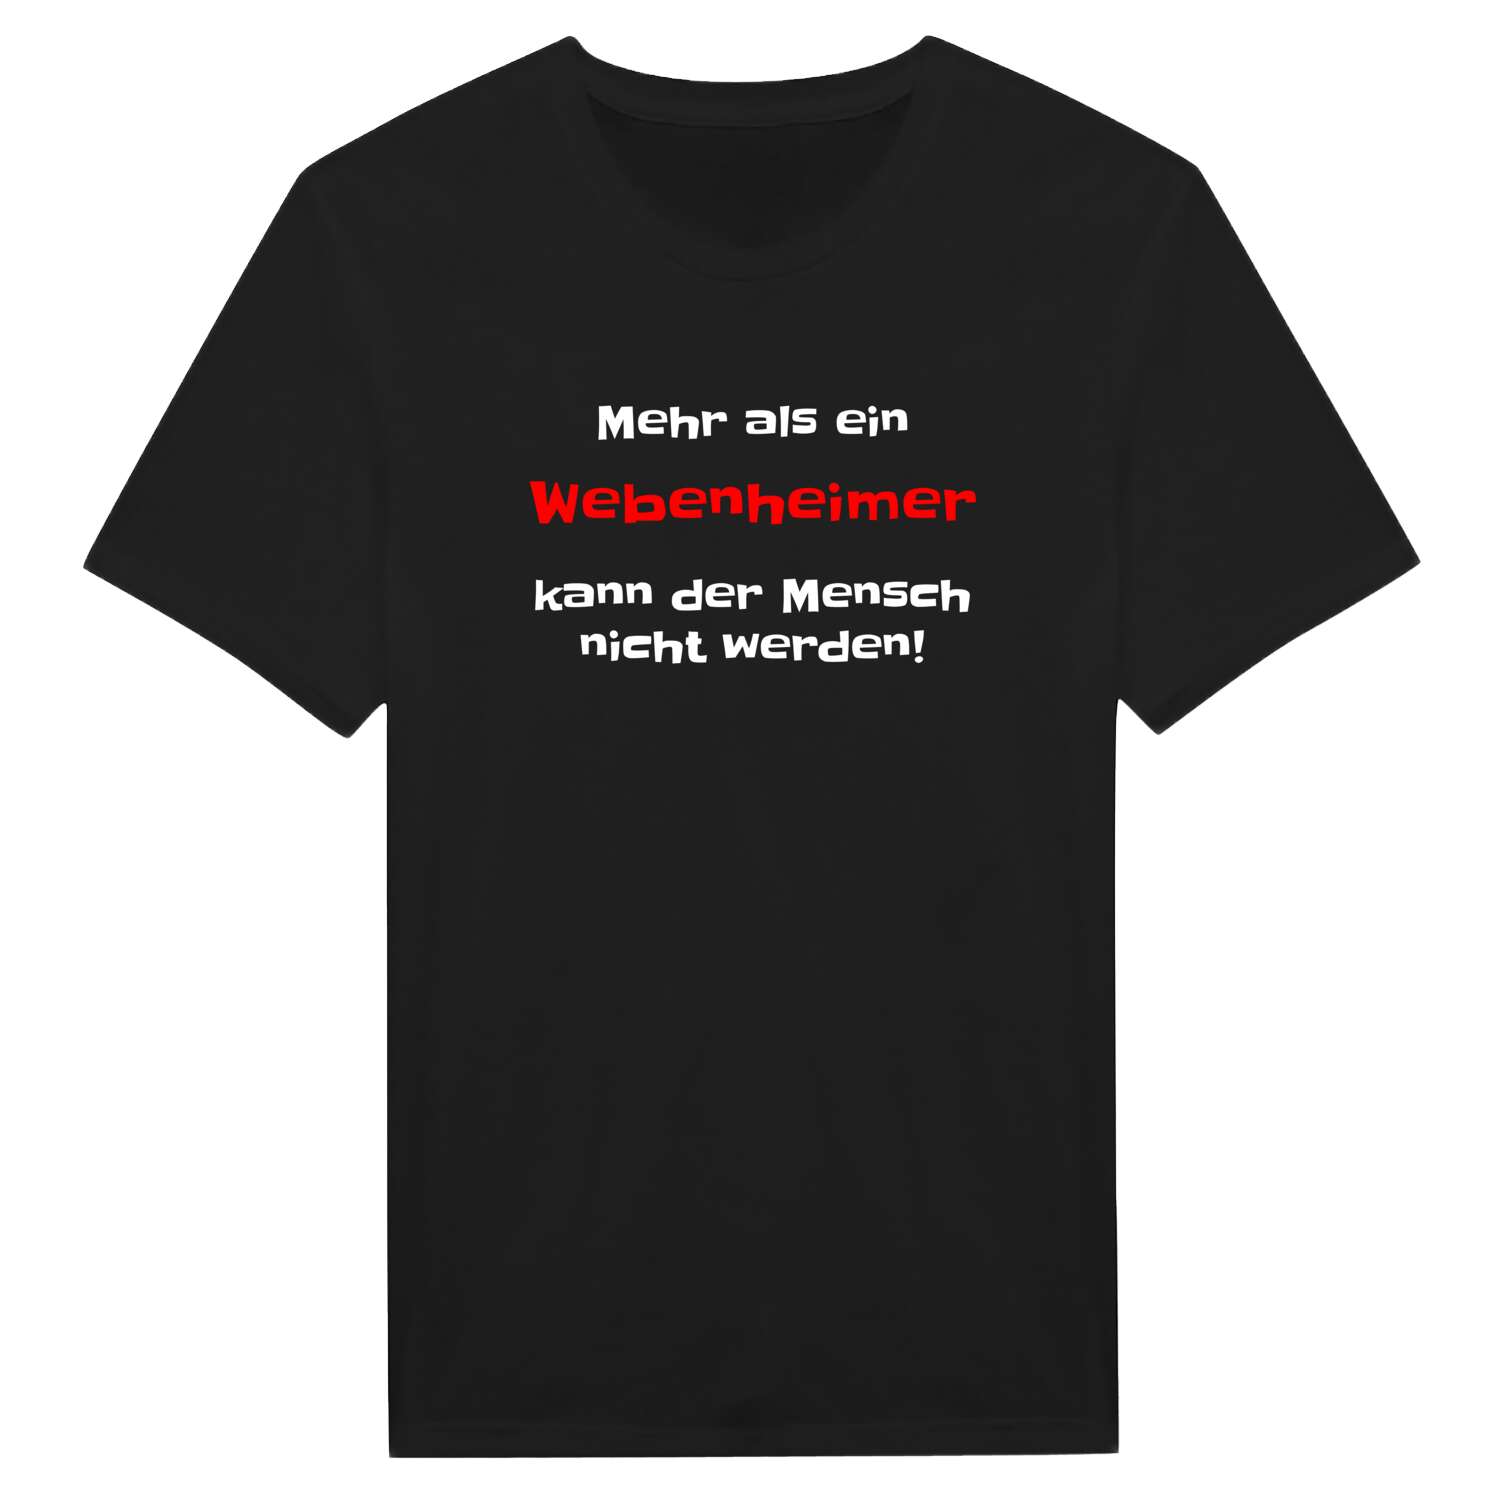 Webenheim T-Shirt »Mehr als ein«